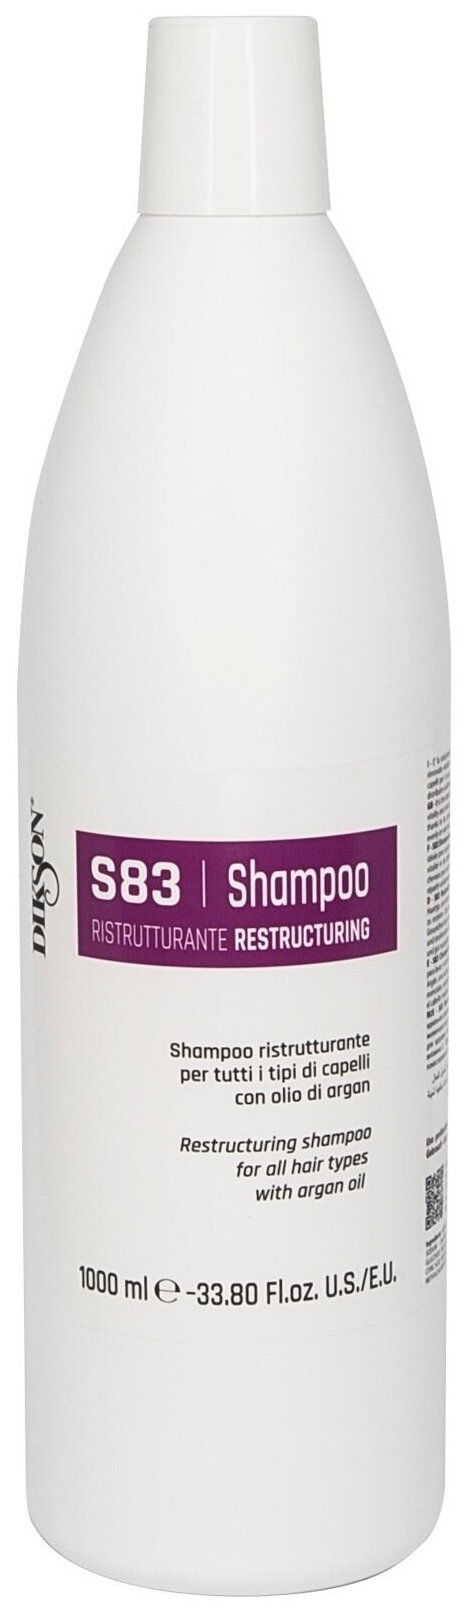 Шампунь восстанавливающий для всех типов с аргановым маслом / SHAMPOO RISTRUTTURANTE S83 1000 мл